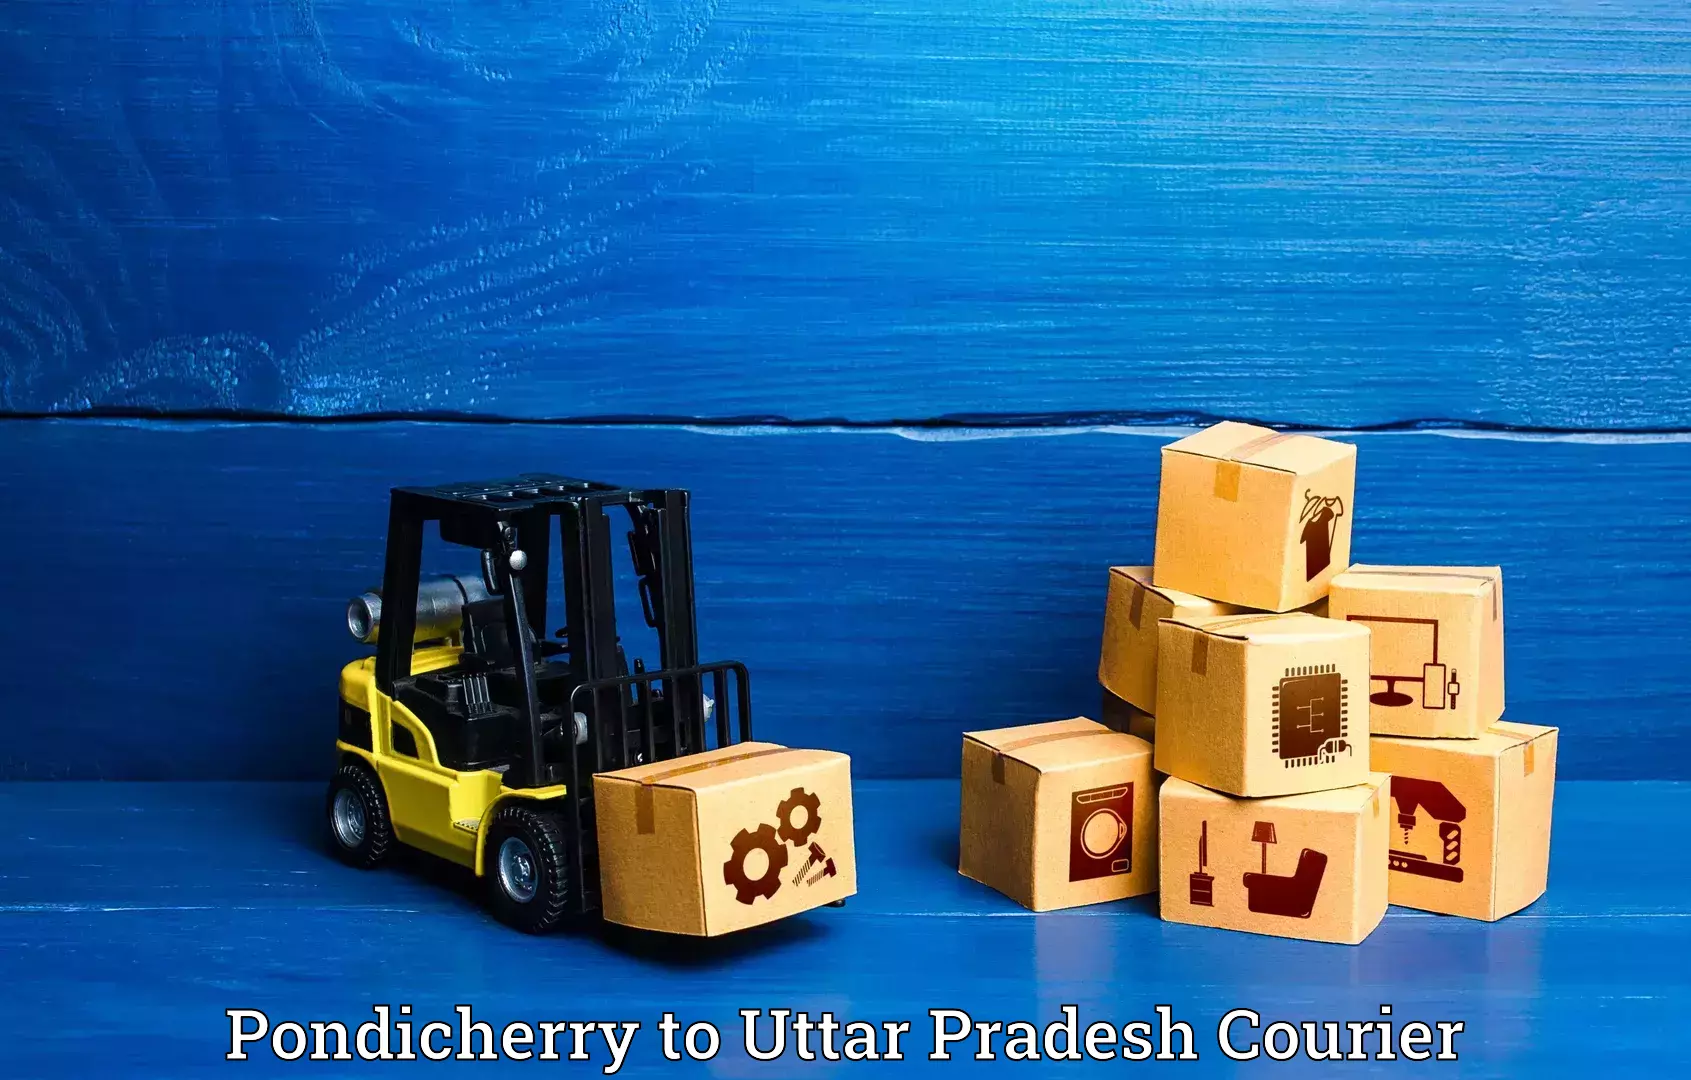 Urgent luggage shipment Pondicherry to Khatauli